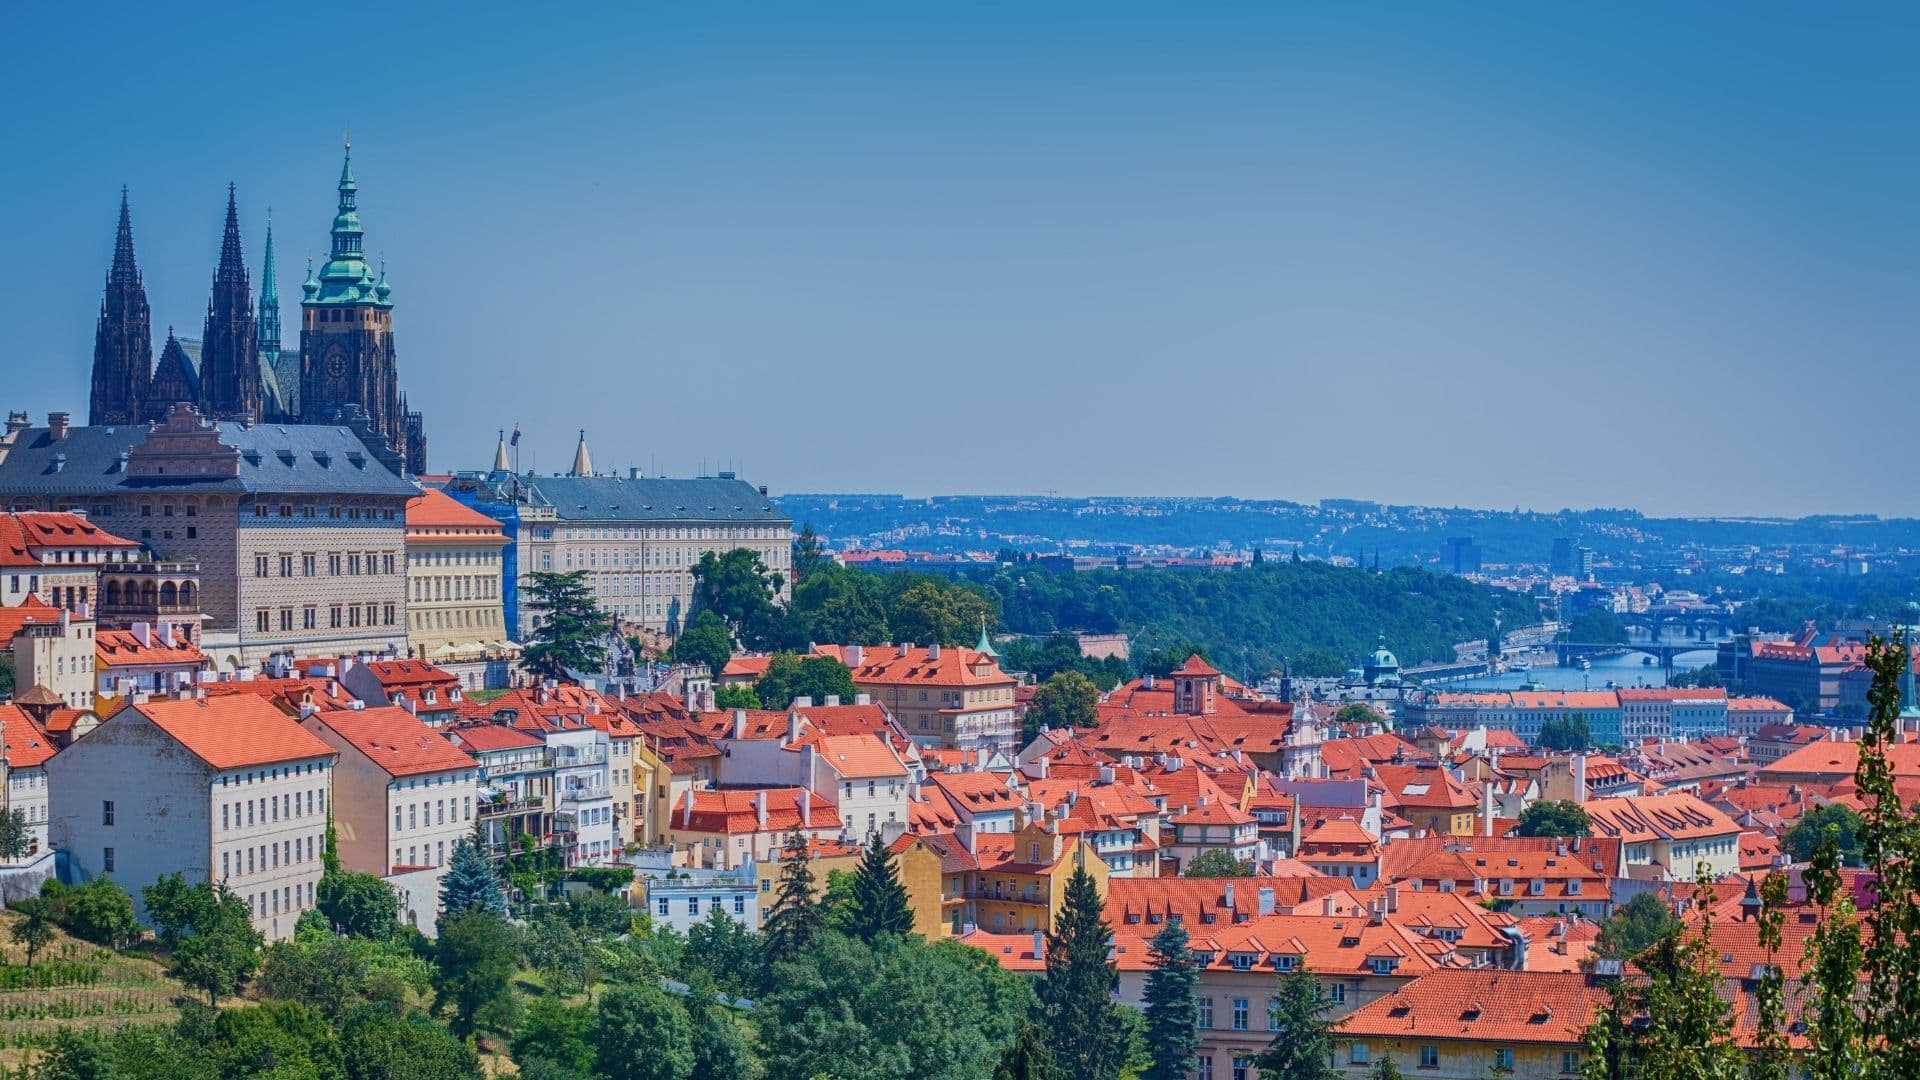 Prague as your next travel destination